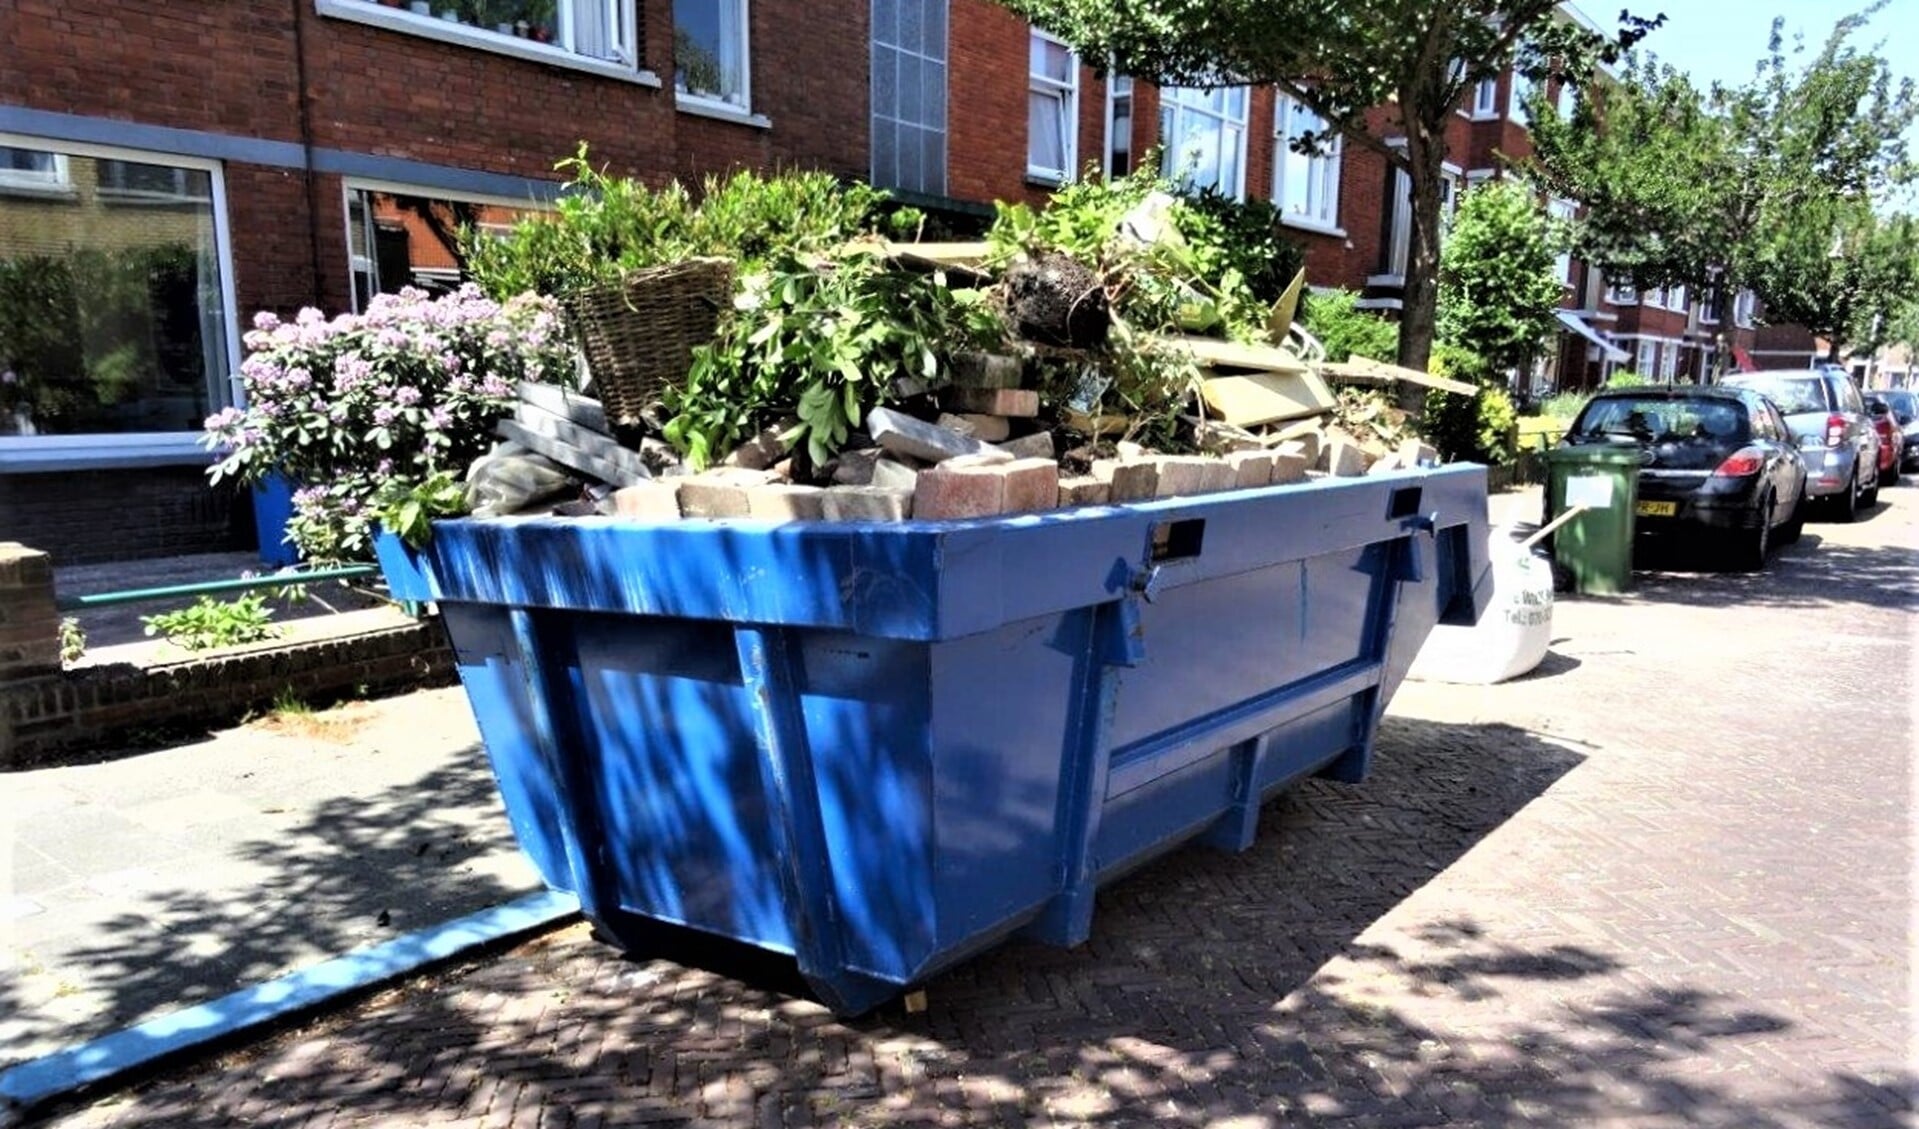 Volle container op openbare parkeerplaats zonder blauwe schijf (foto: Ap de Heus).